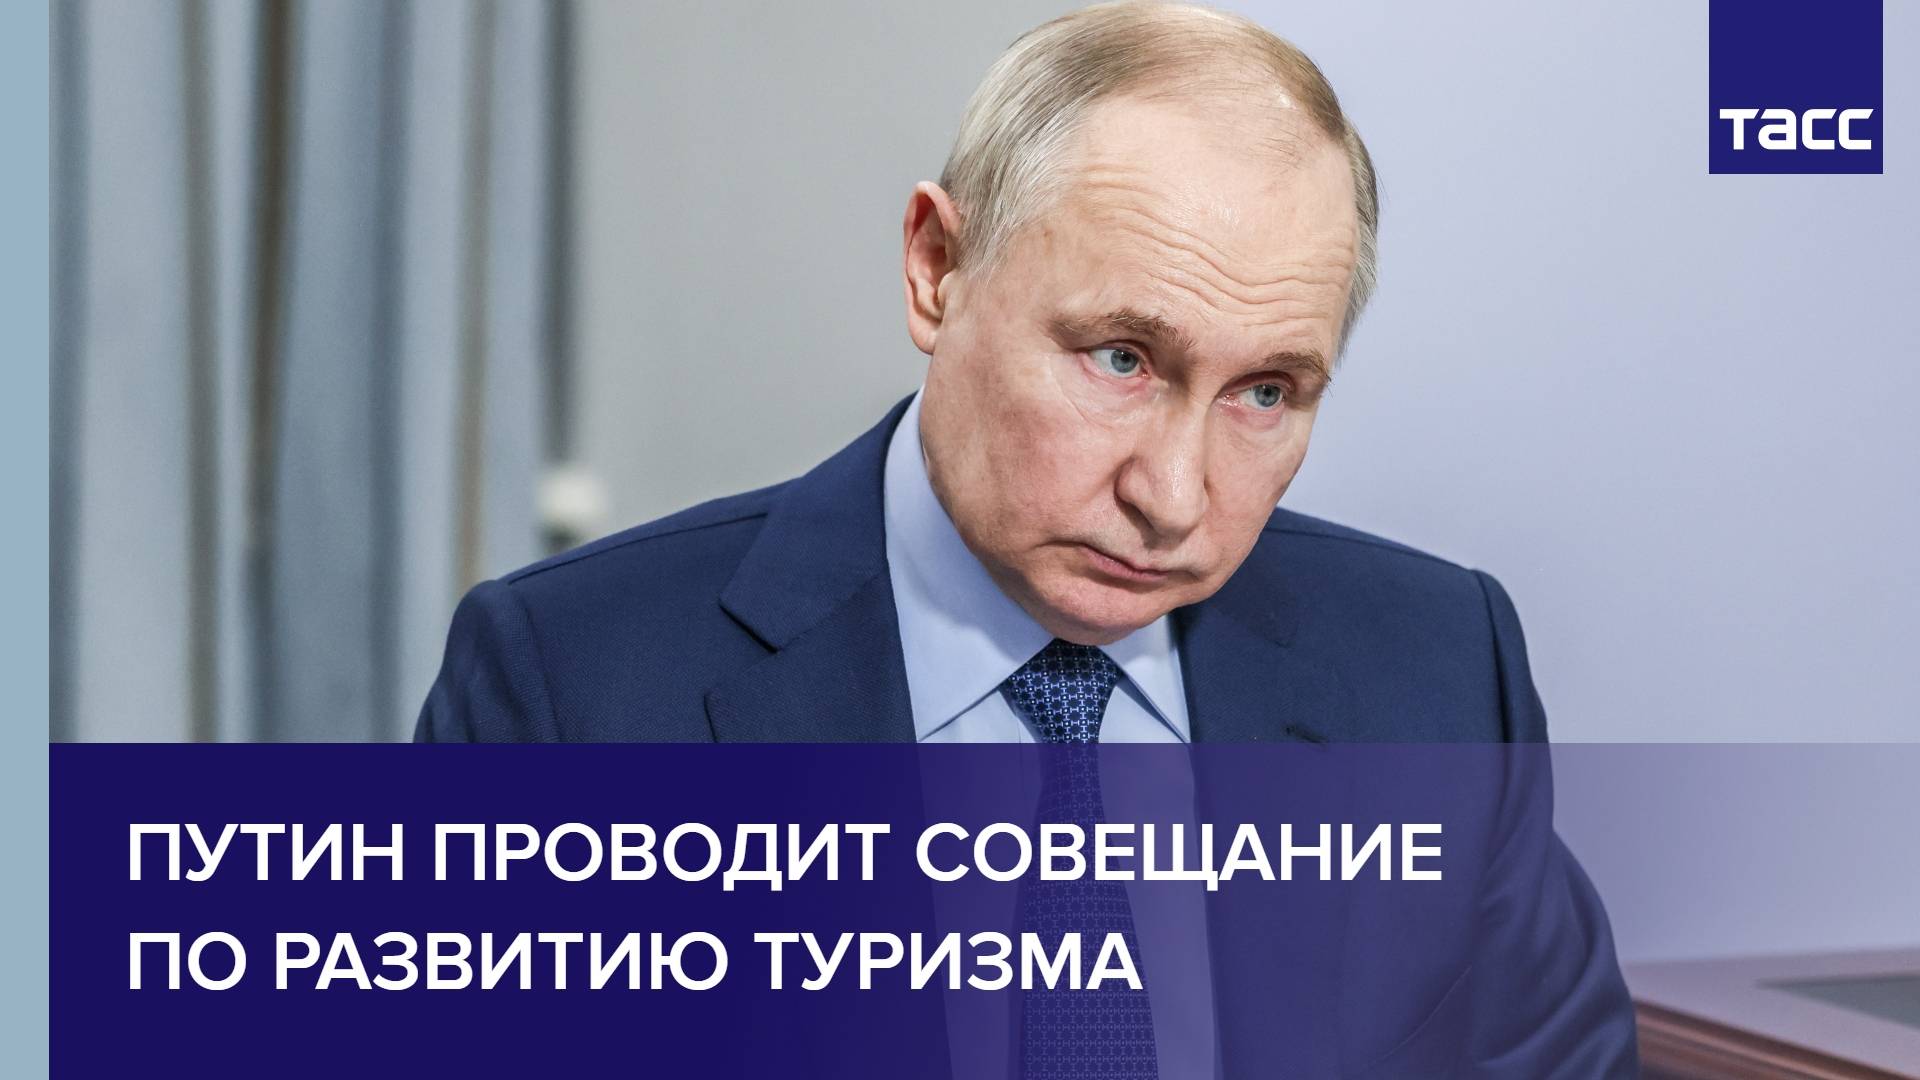 Путин проводит совещание по развитию туризма